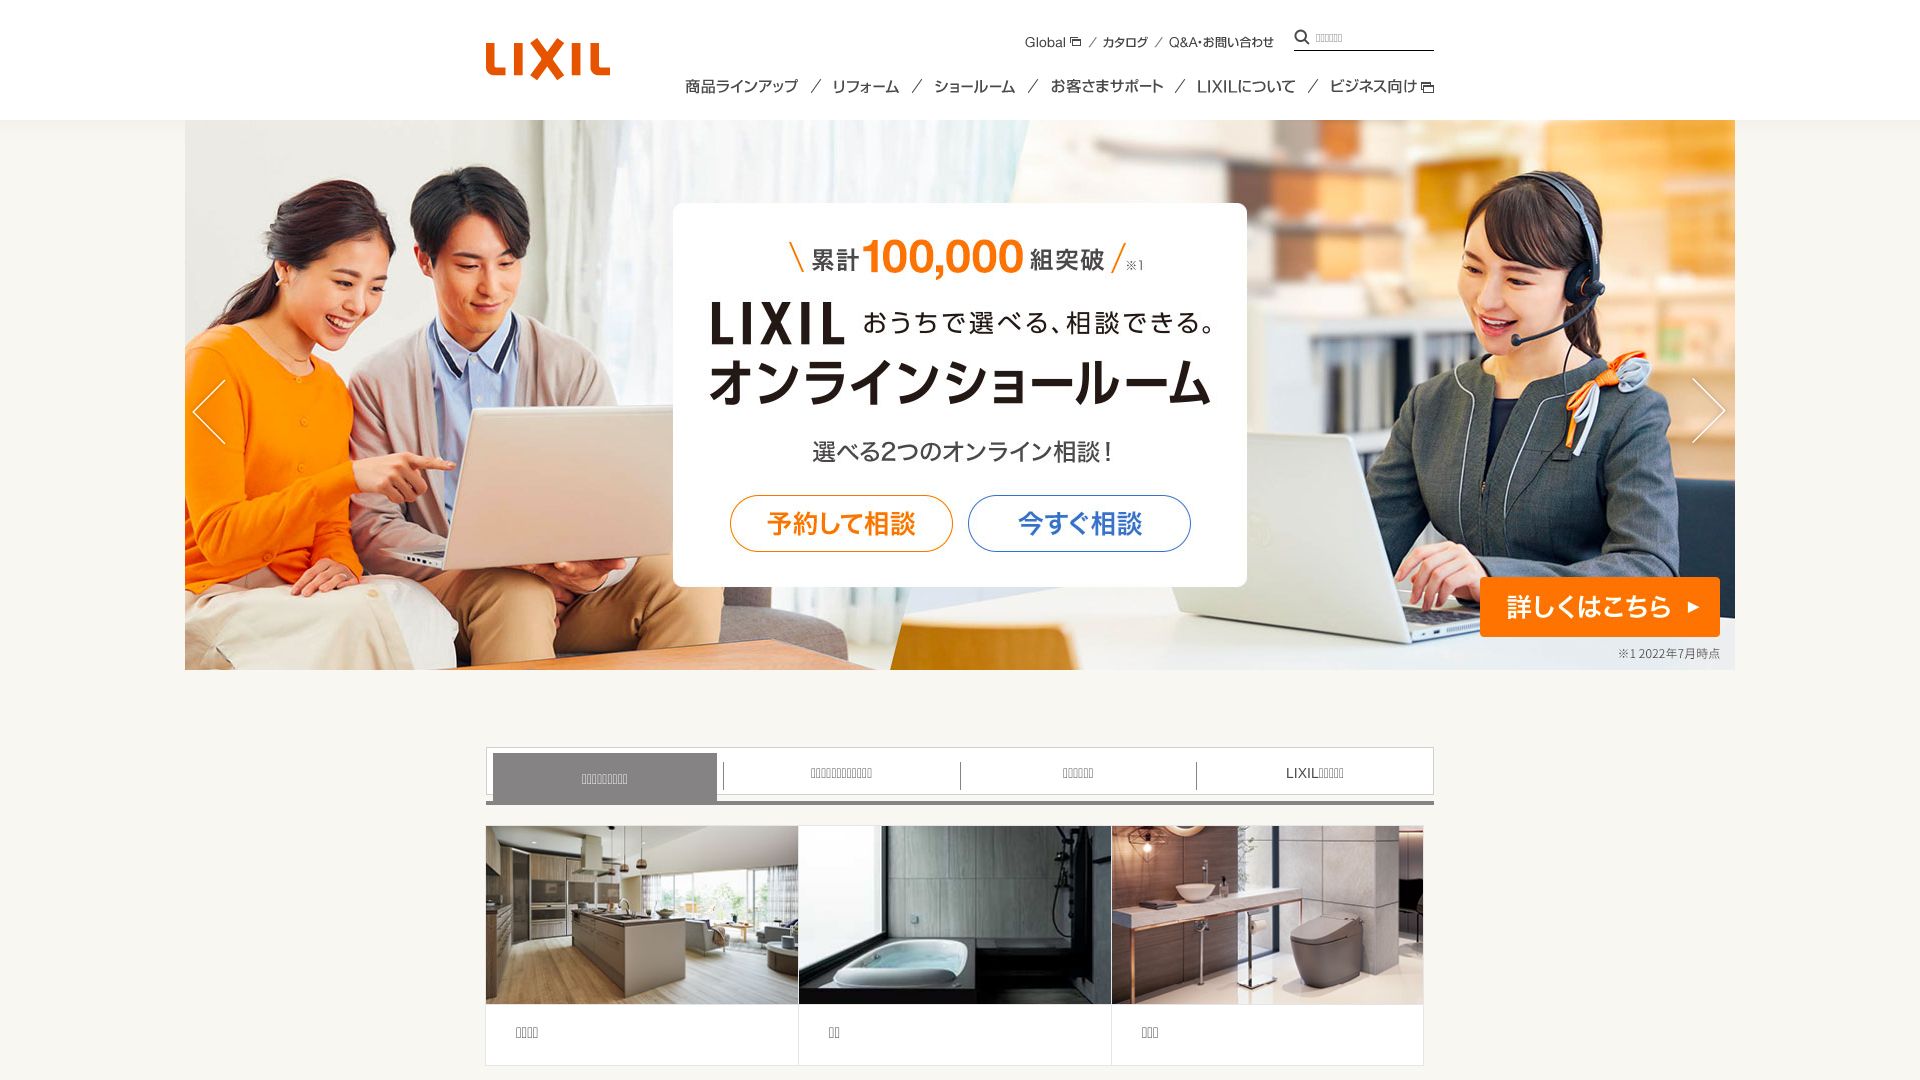 Estado web lixil.co.jp está   ONLINE